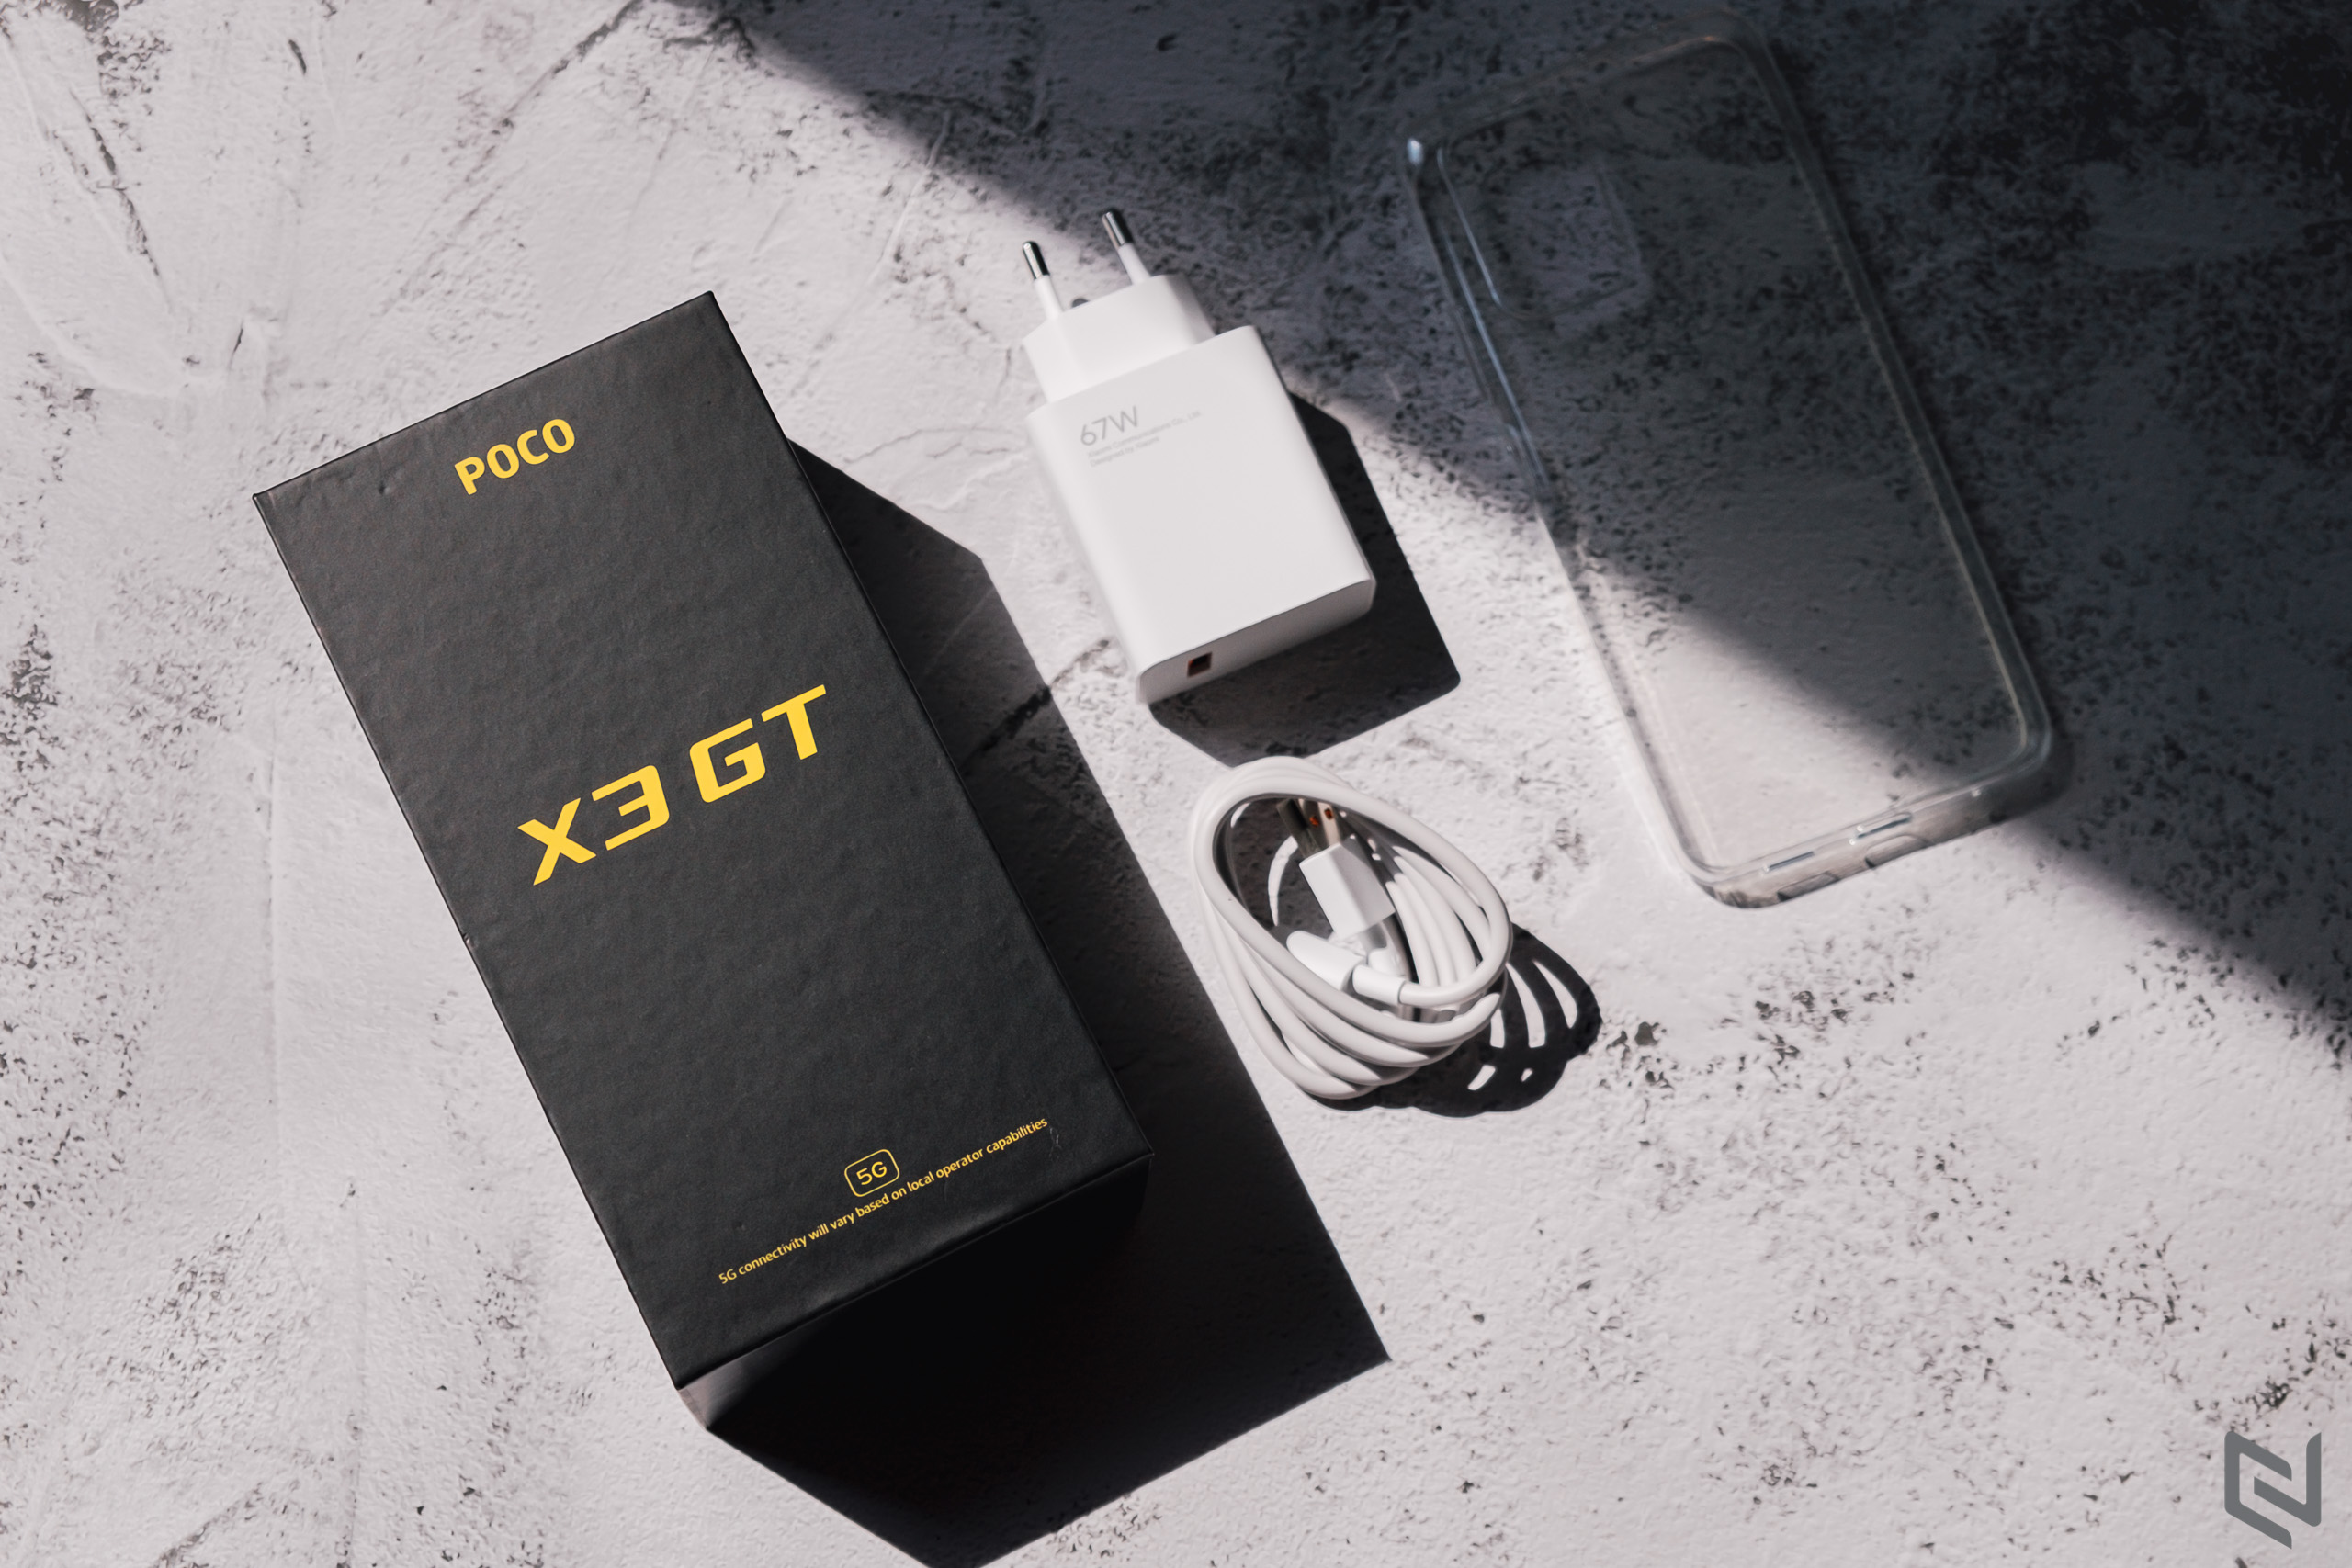 Mở hộp và đánh giá nhanh POCO X3 GT: Hiệu năng khủng, camera tốt, đặc biệt sạc siêu nhanh